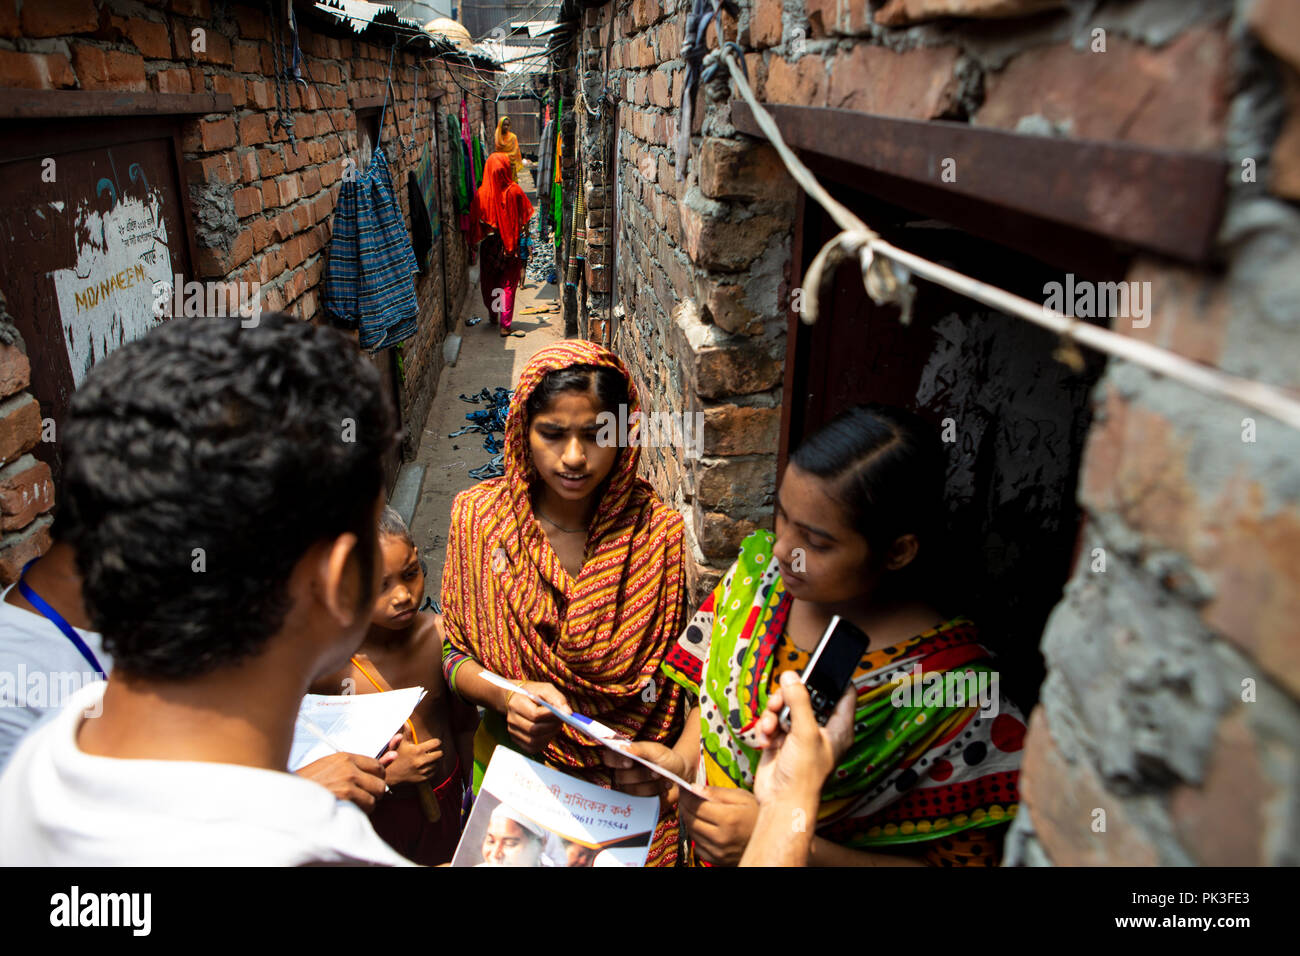 Le personnel de la communauté de parler aux travailleurs du vêtement dans les bidonvilles où ils vivent à Dhaka, au Bangladesh. Banque D'Images